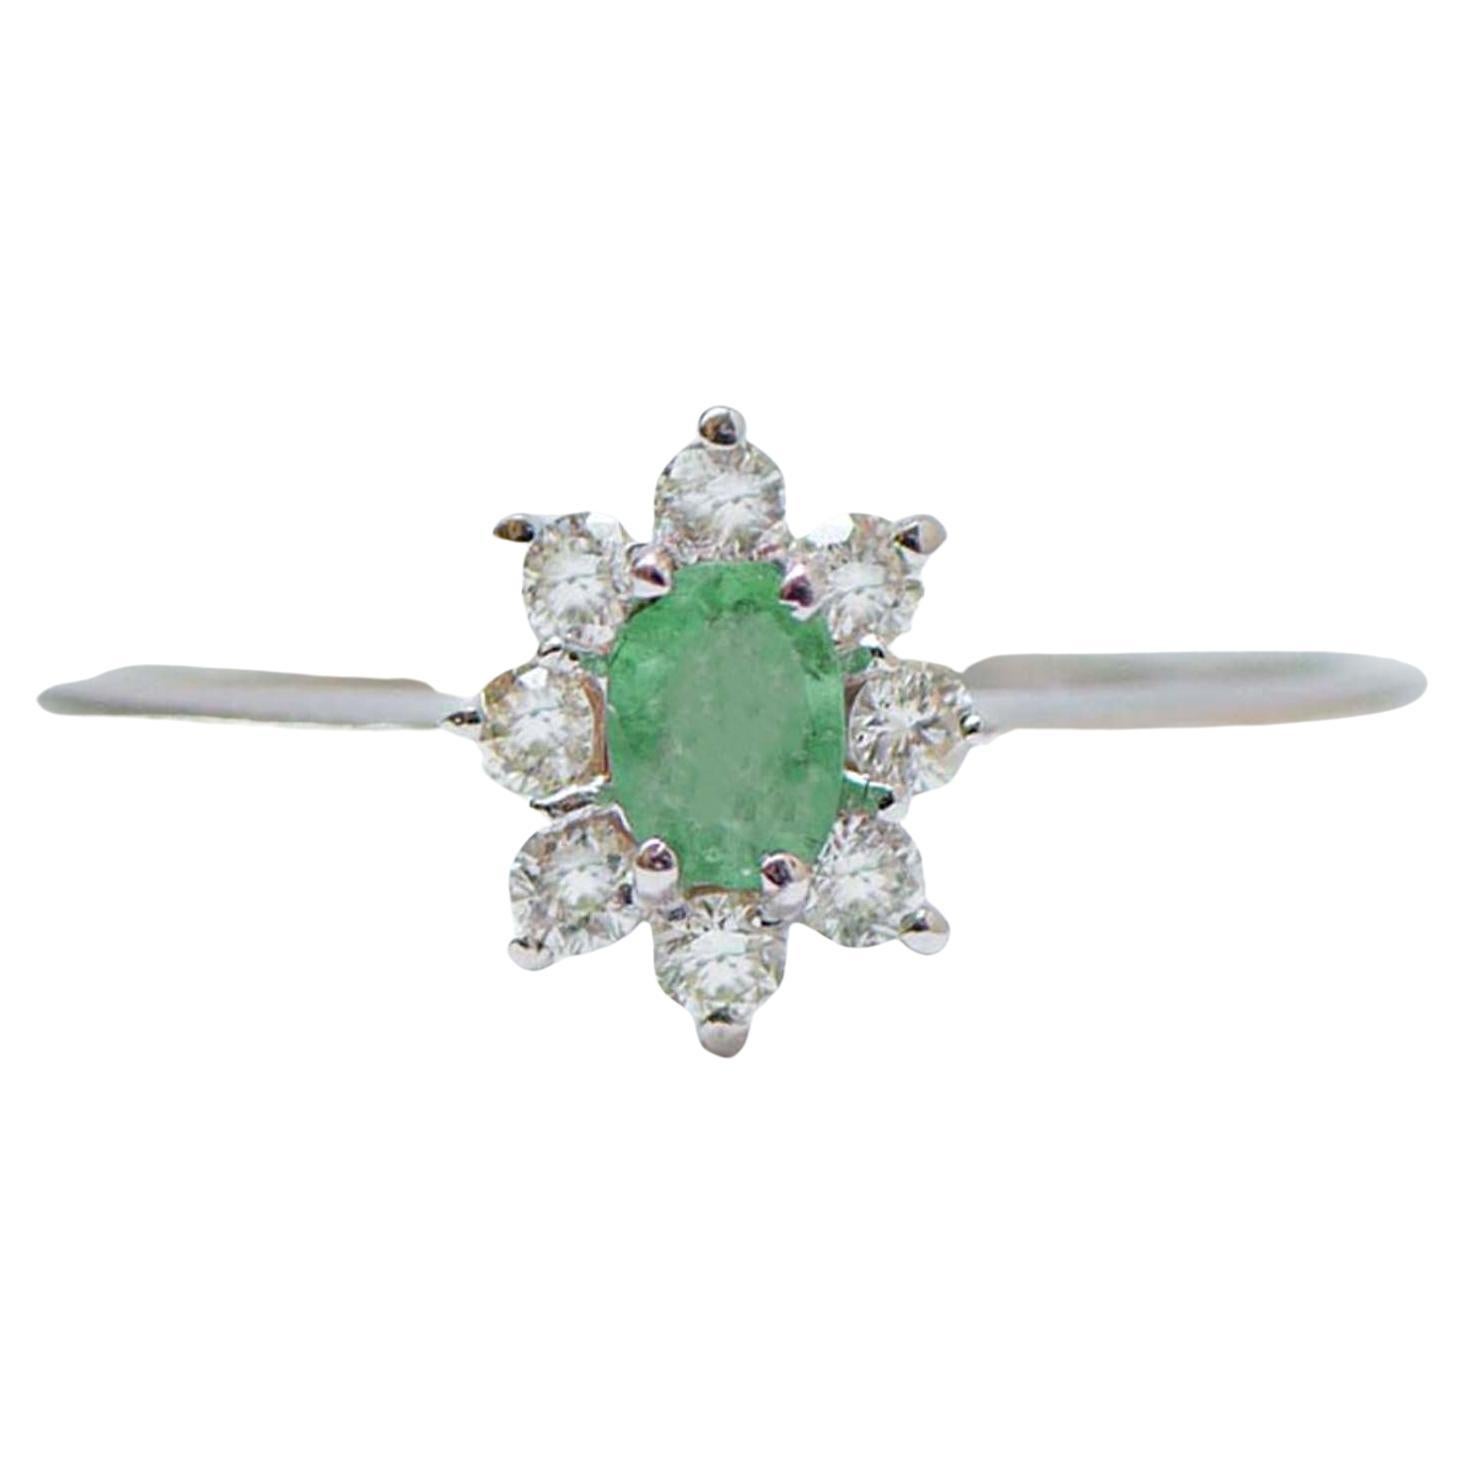 Emerald, Diamonds, 18 Karat White Gold Modern Ring.